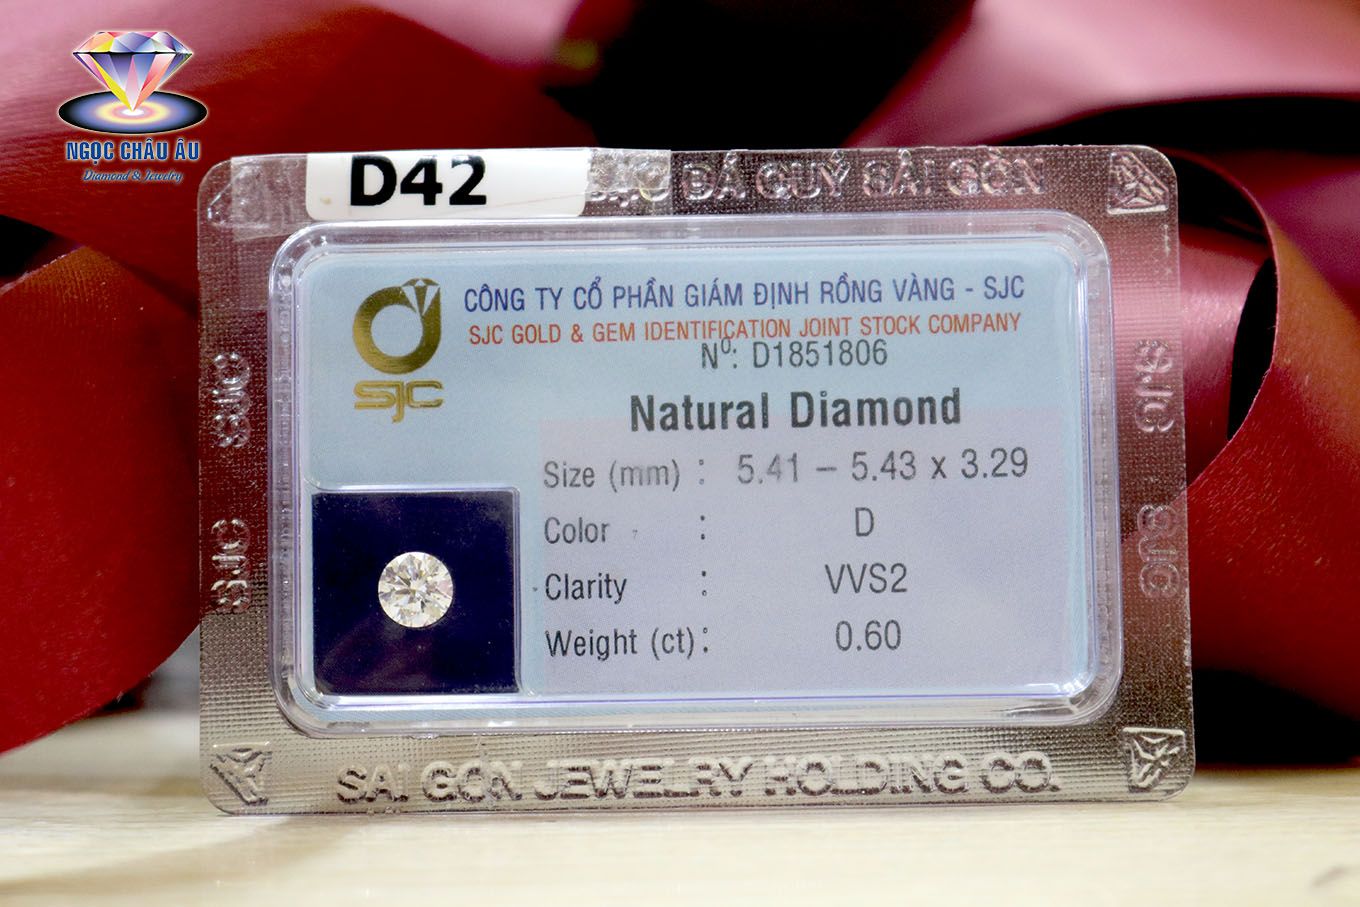  D42-Kim Cương Thiên Nhiên 5.41-5.43x3.29mm; 0.6ct; D/VVS2 (GIA 6187689032 - SJC D1851806) 